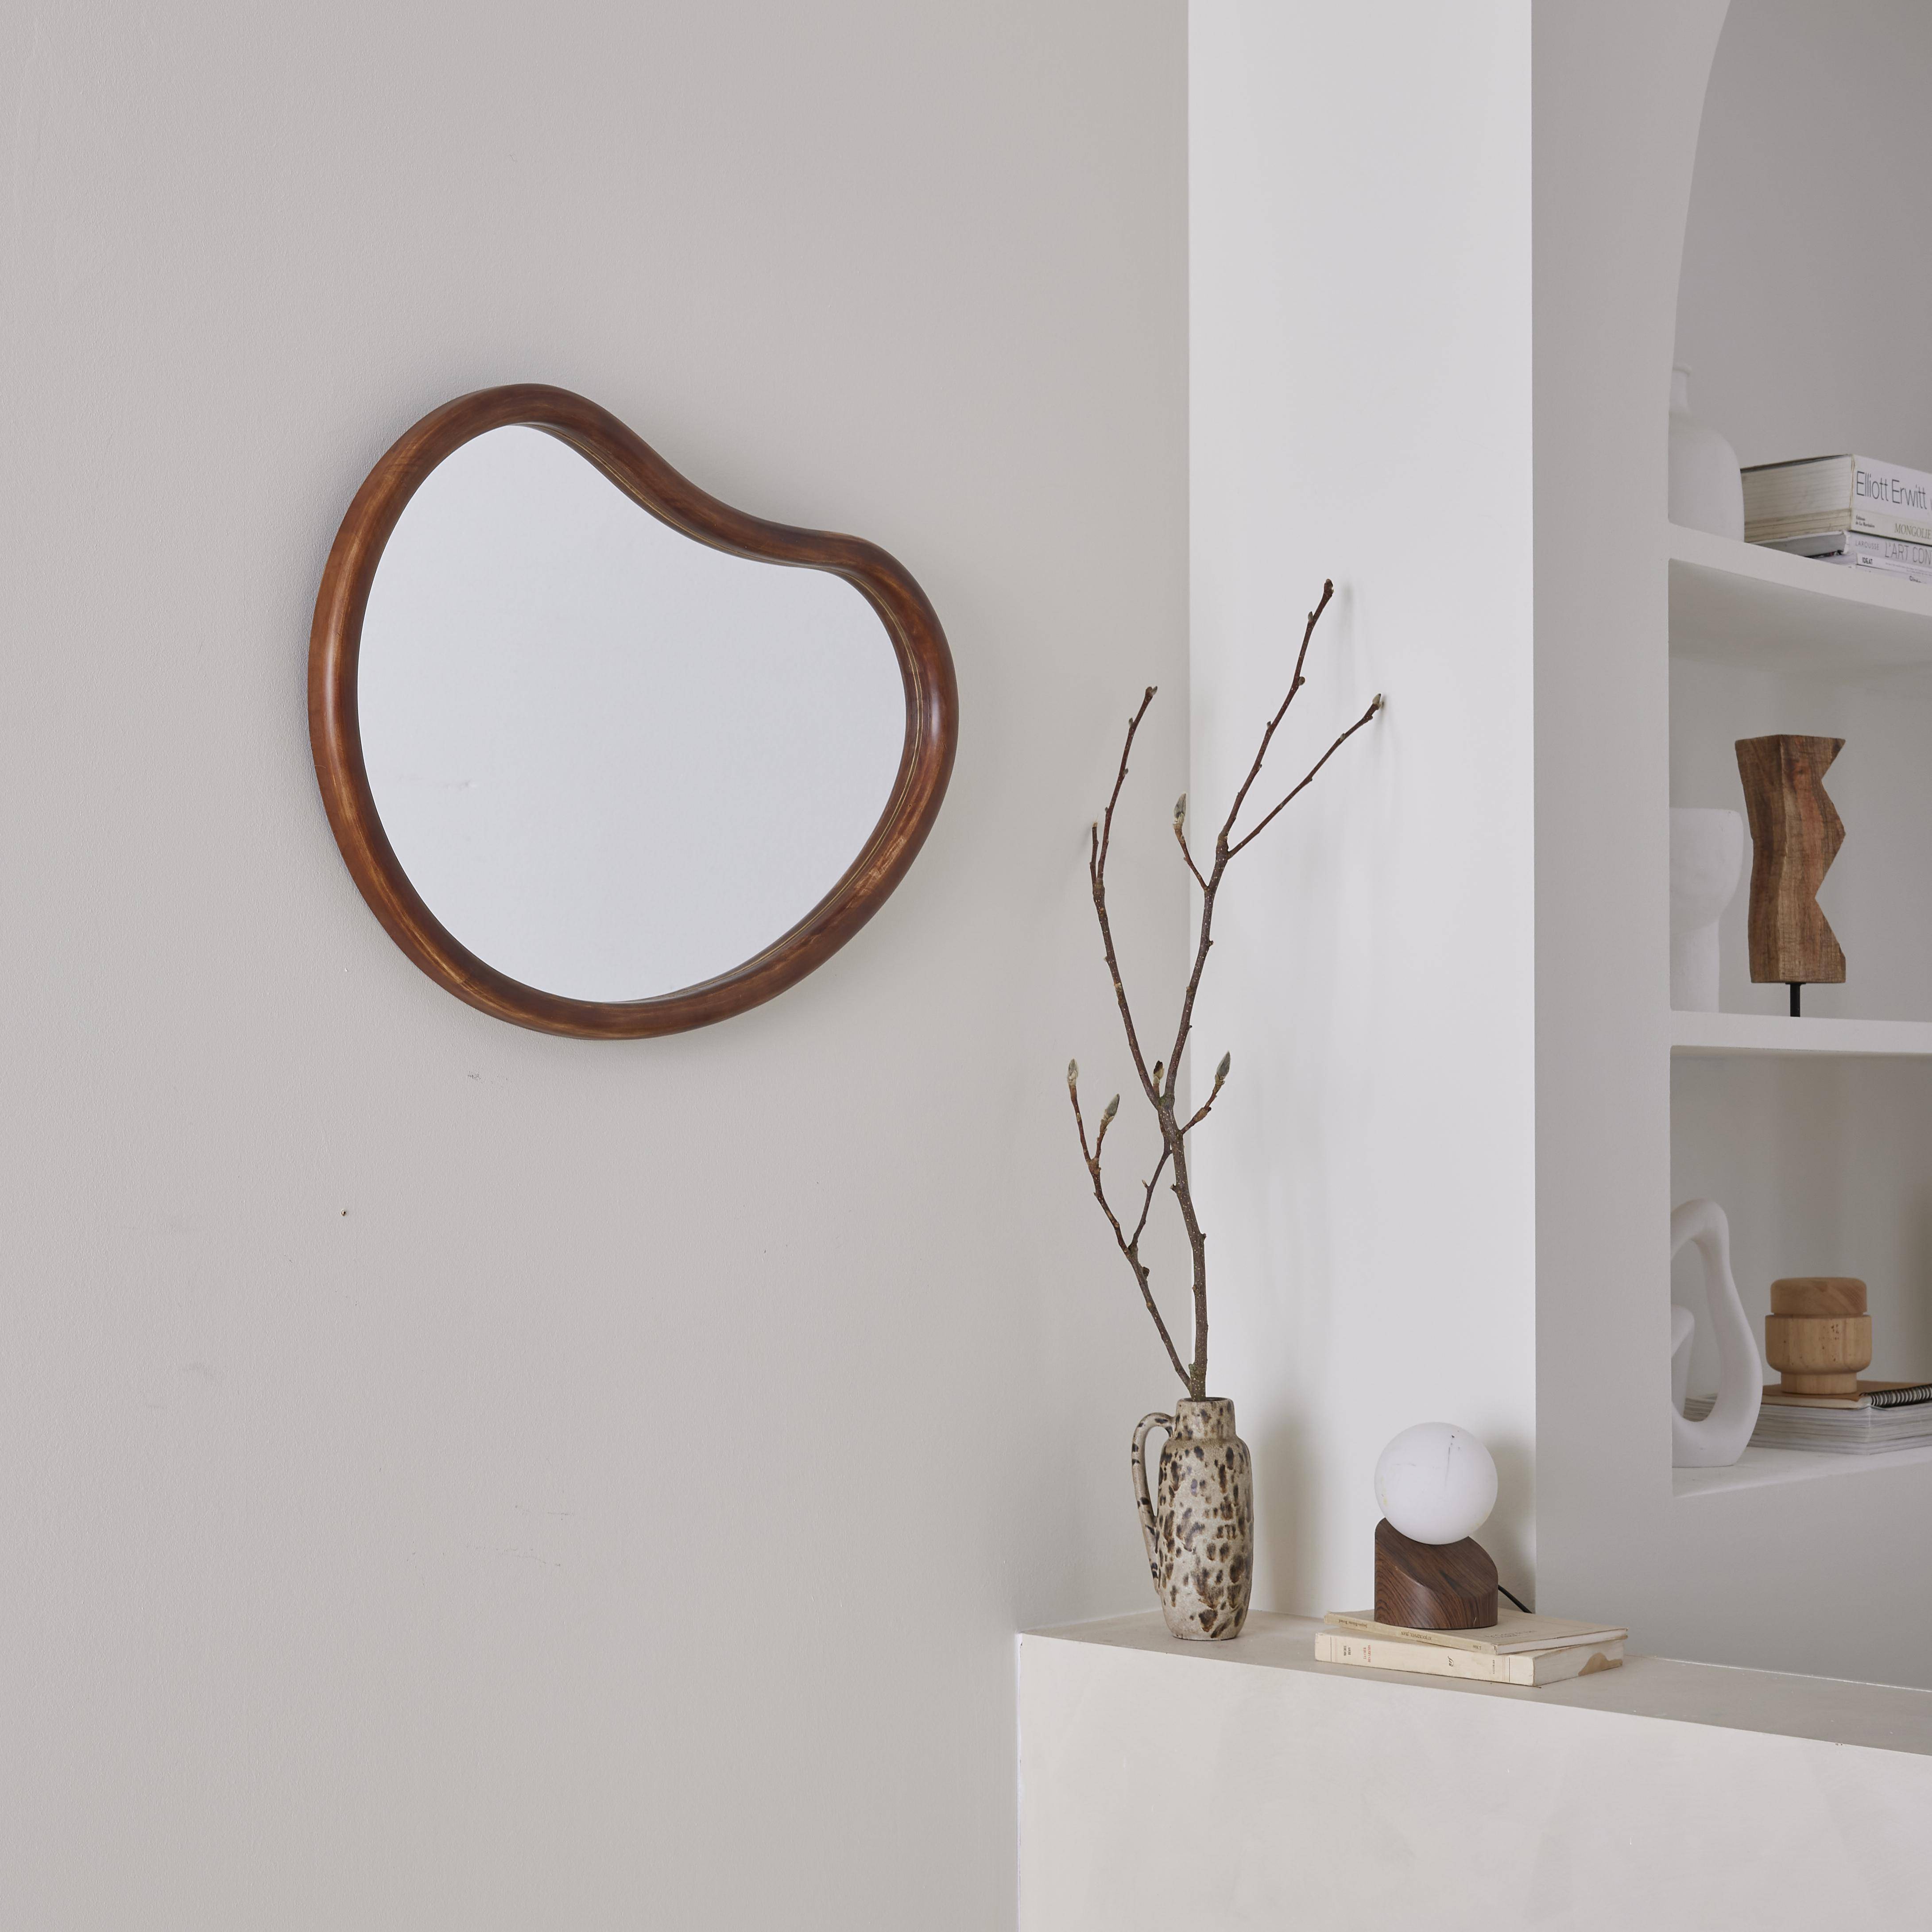 Organischer Spiegel aus Tannenholz 65cm, 3cm dick, nussbaumfarben, ideal für Eingang, Schlafzimmer oder Badezimmer. Photo2